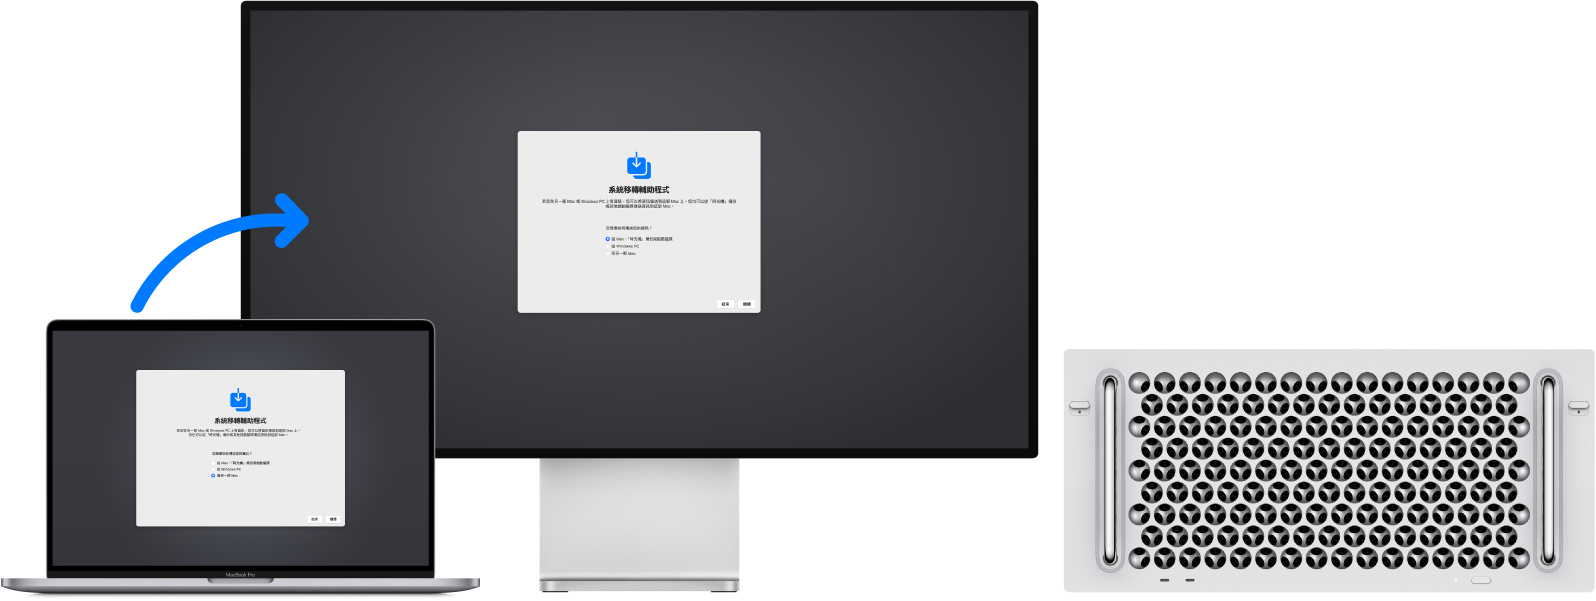 MacBook Pro 和 Mac Pro 同時顯示「系統移轉輔助程式」畫面。從 MacBook Pro 指向 Mac Pro 的箭頭表示資料從前者移轉至後者。